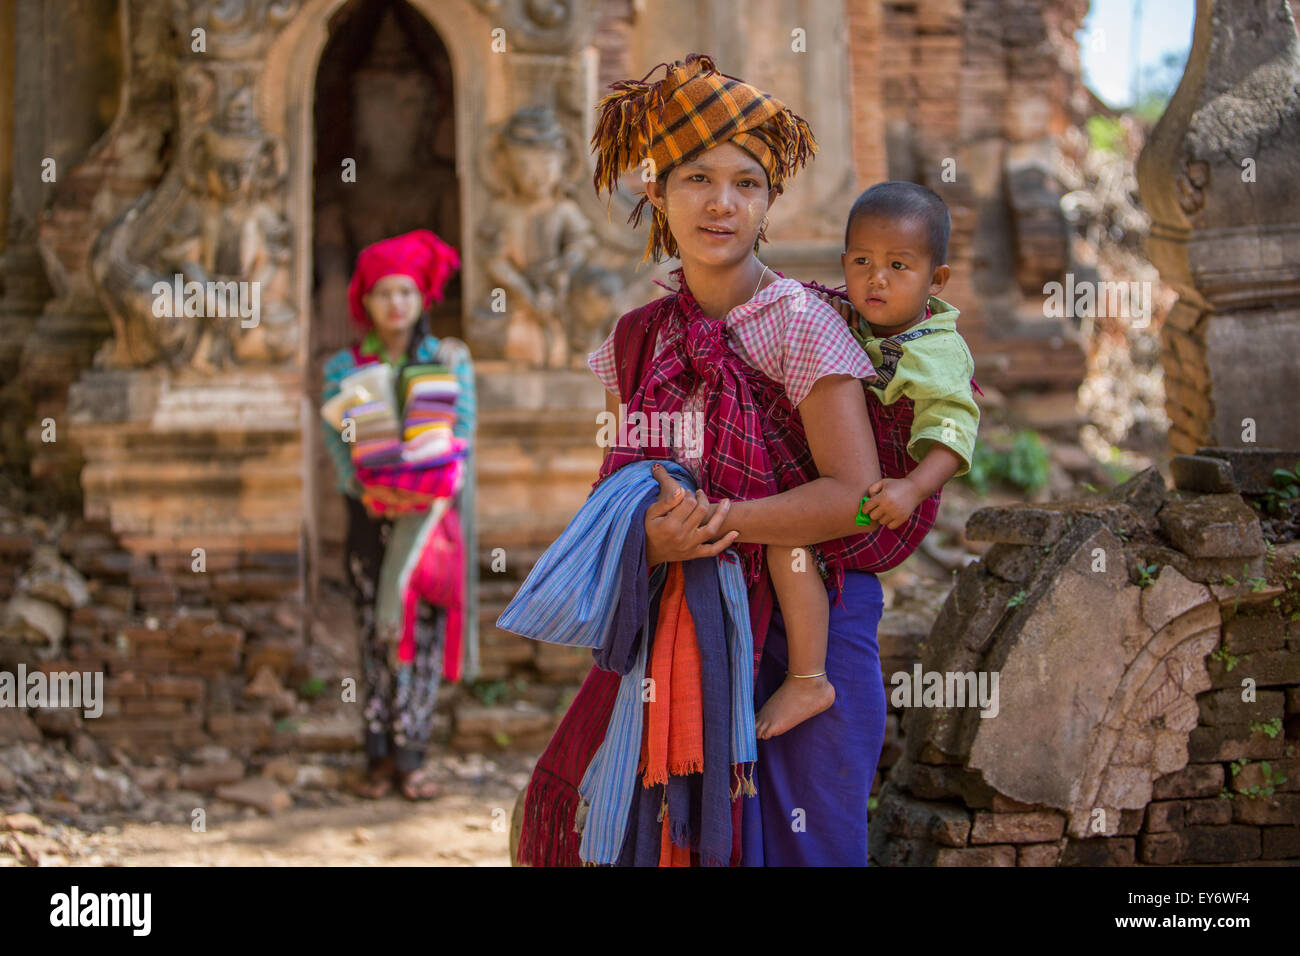 Mujeres birmanas vendiendo bufandas tejidas a mano en el Inn Thein monasterios en ruinas, Myanmar Foto de stock